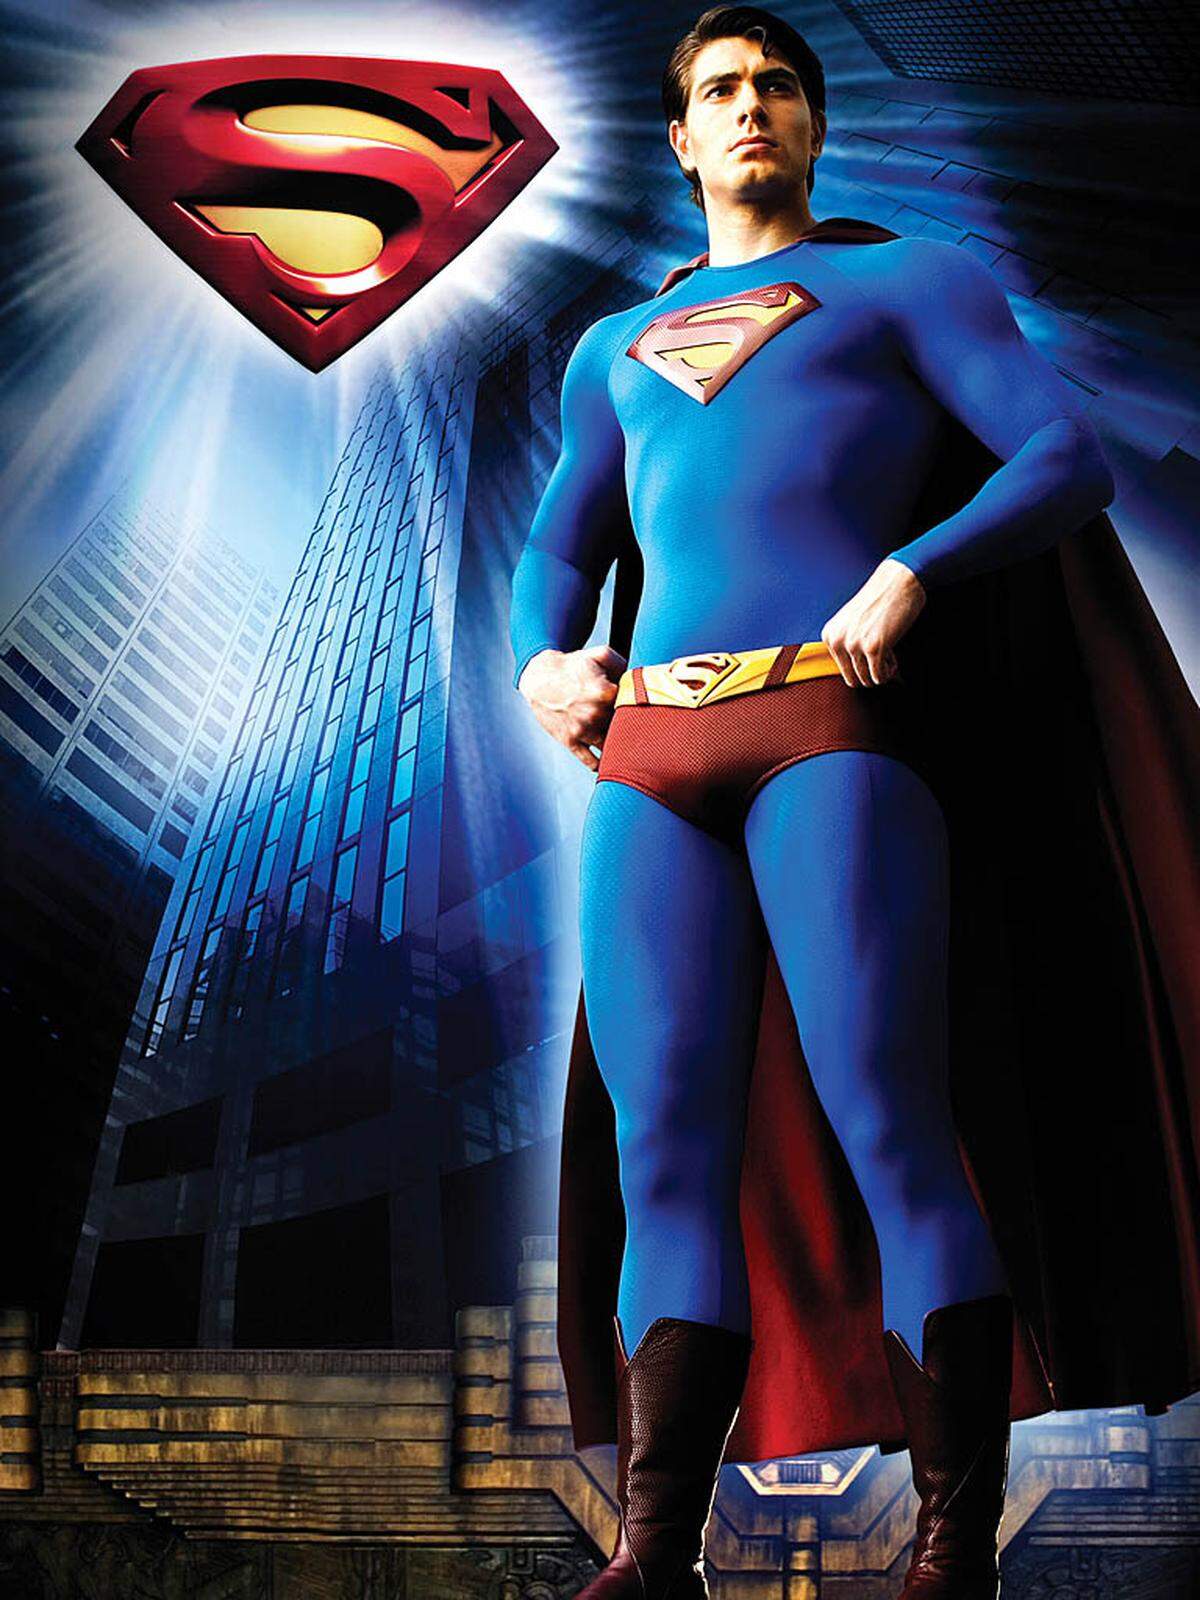 "Superman" startet einen neuen Anflug auf die Kinoleinwand. Warner und Legendary Pictures hoffen, den Streifen Weihnachten 2012 in die Kinos zu bringen. Regisseur des "Superman"-Comebacks soll US-Filmemacher Zack Snyder sein, der bereits die Comics "300" und "The Watchmen - Die Wächter" verfilmt hat. Als Produzenten holte er sich "Batman"-Regisseur Christopher Nolan ins Boot. Wer in die Rolle das Superman schlüpfen soll, steht noch nicht fest.  Nach dem mäßigen Erfolg von "Superman Returns" (im Bild) hoffen die Filmemacher auf einen Kassenschlager mit dem neuen Streifen. Der Film von 2006 kostete 2010 Millionen Dollar und spielte weltweit "nur" 390 Millionen Dollar ein. Quelle: "Variety"